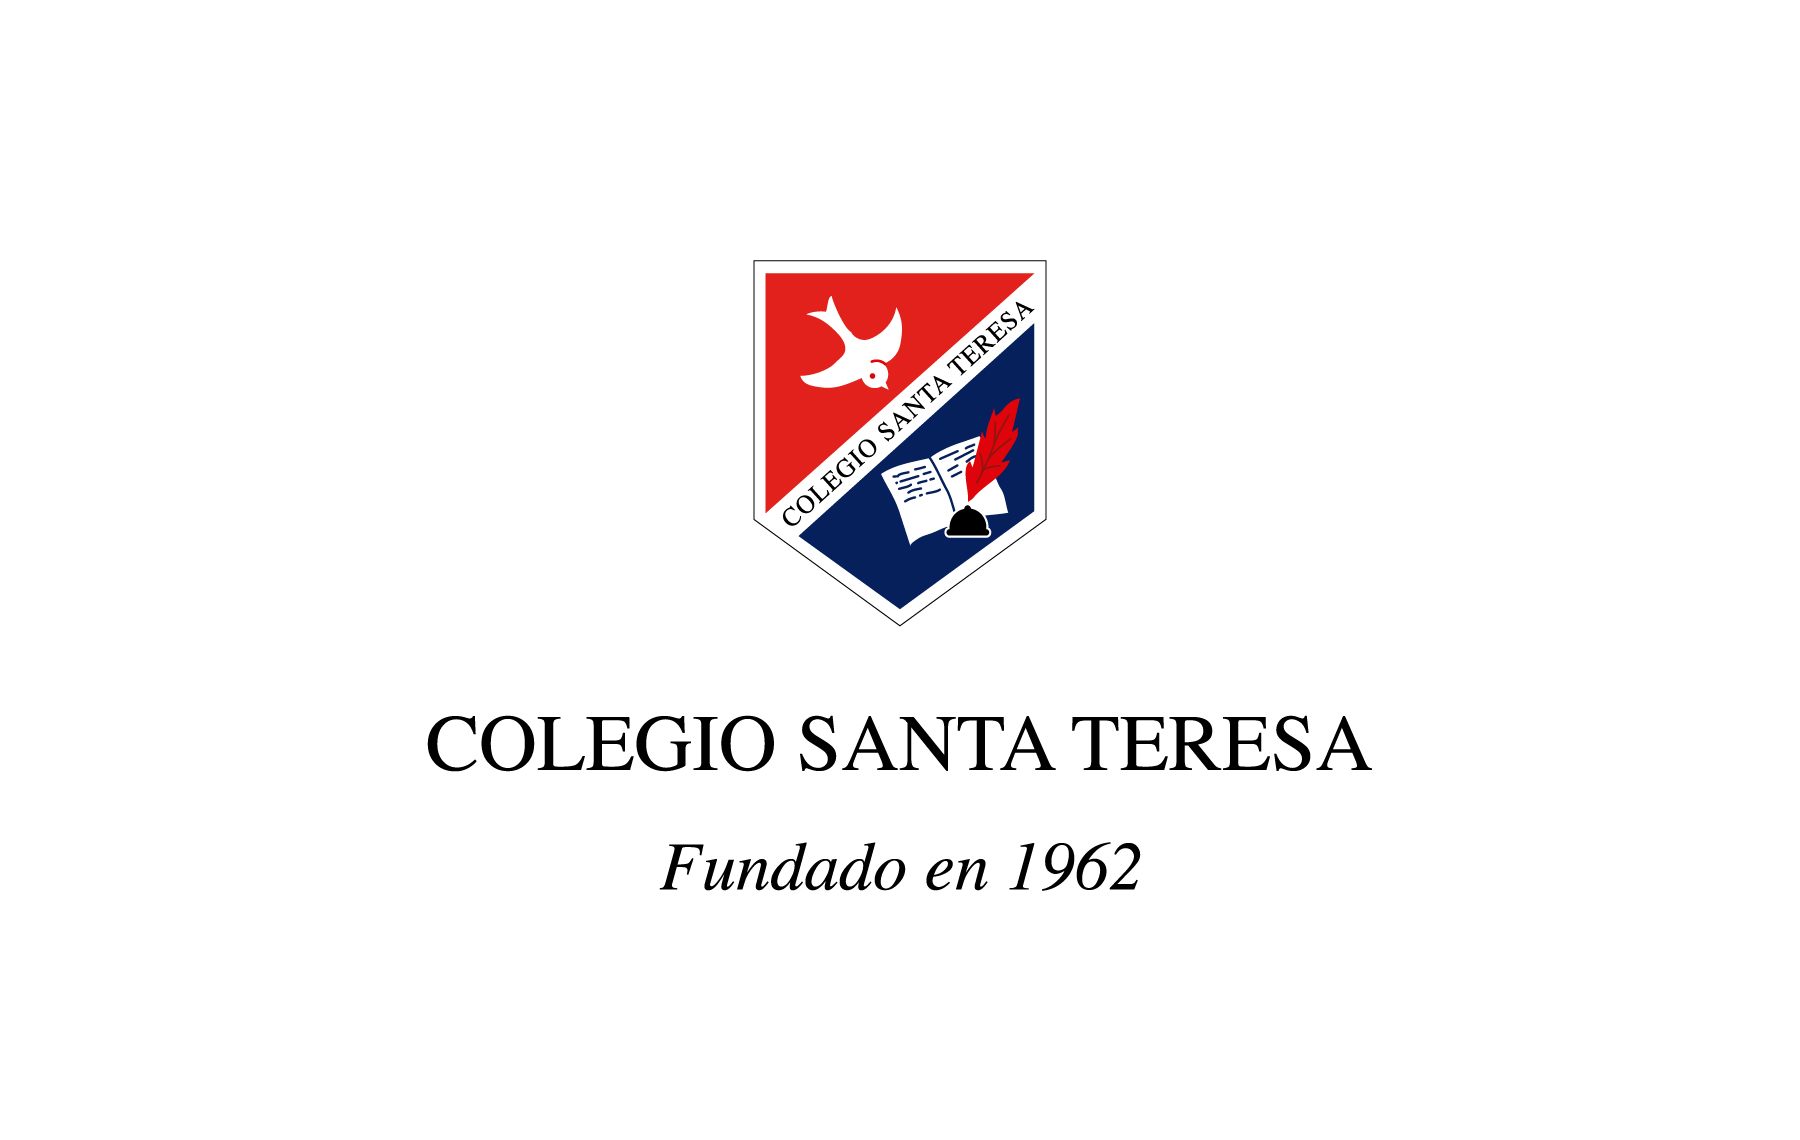 Colegio Santa Teresa